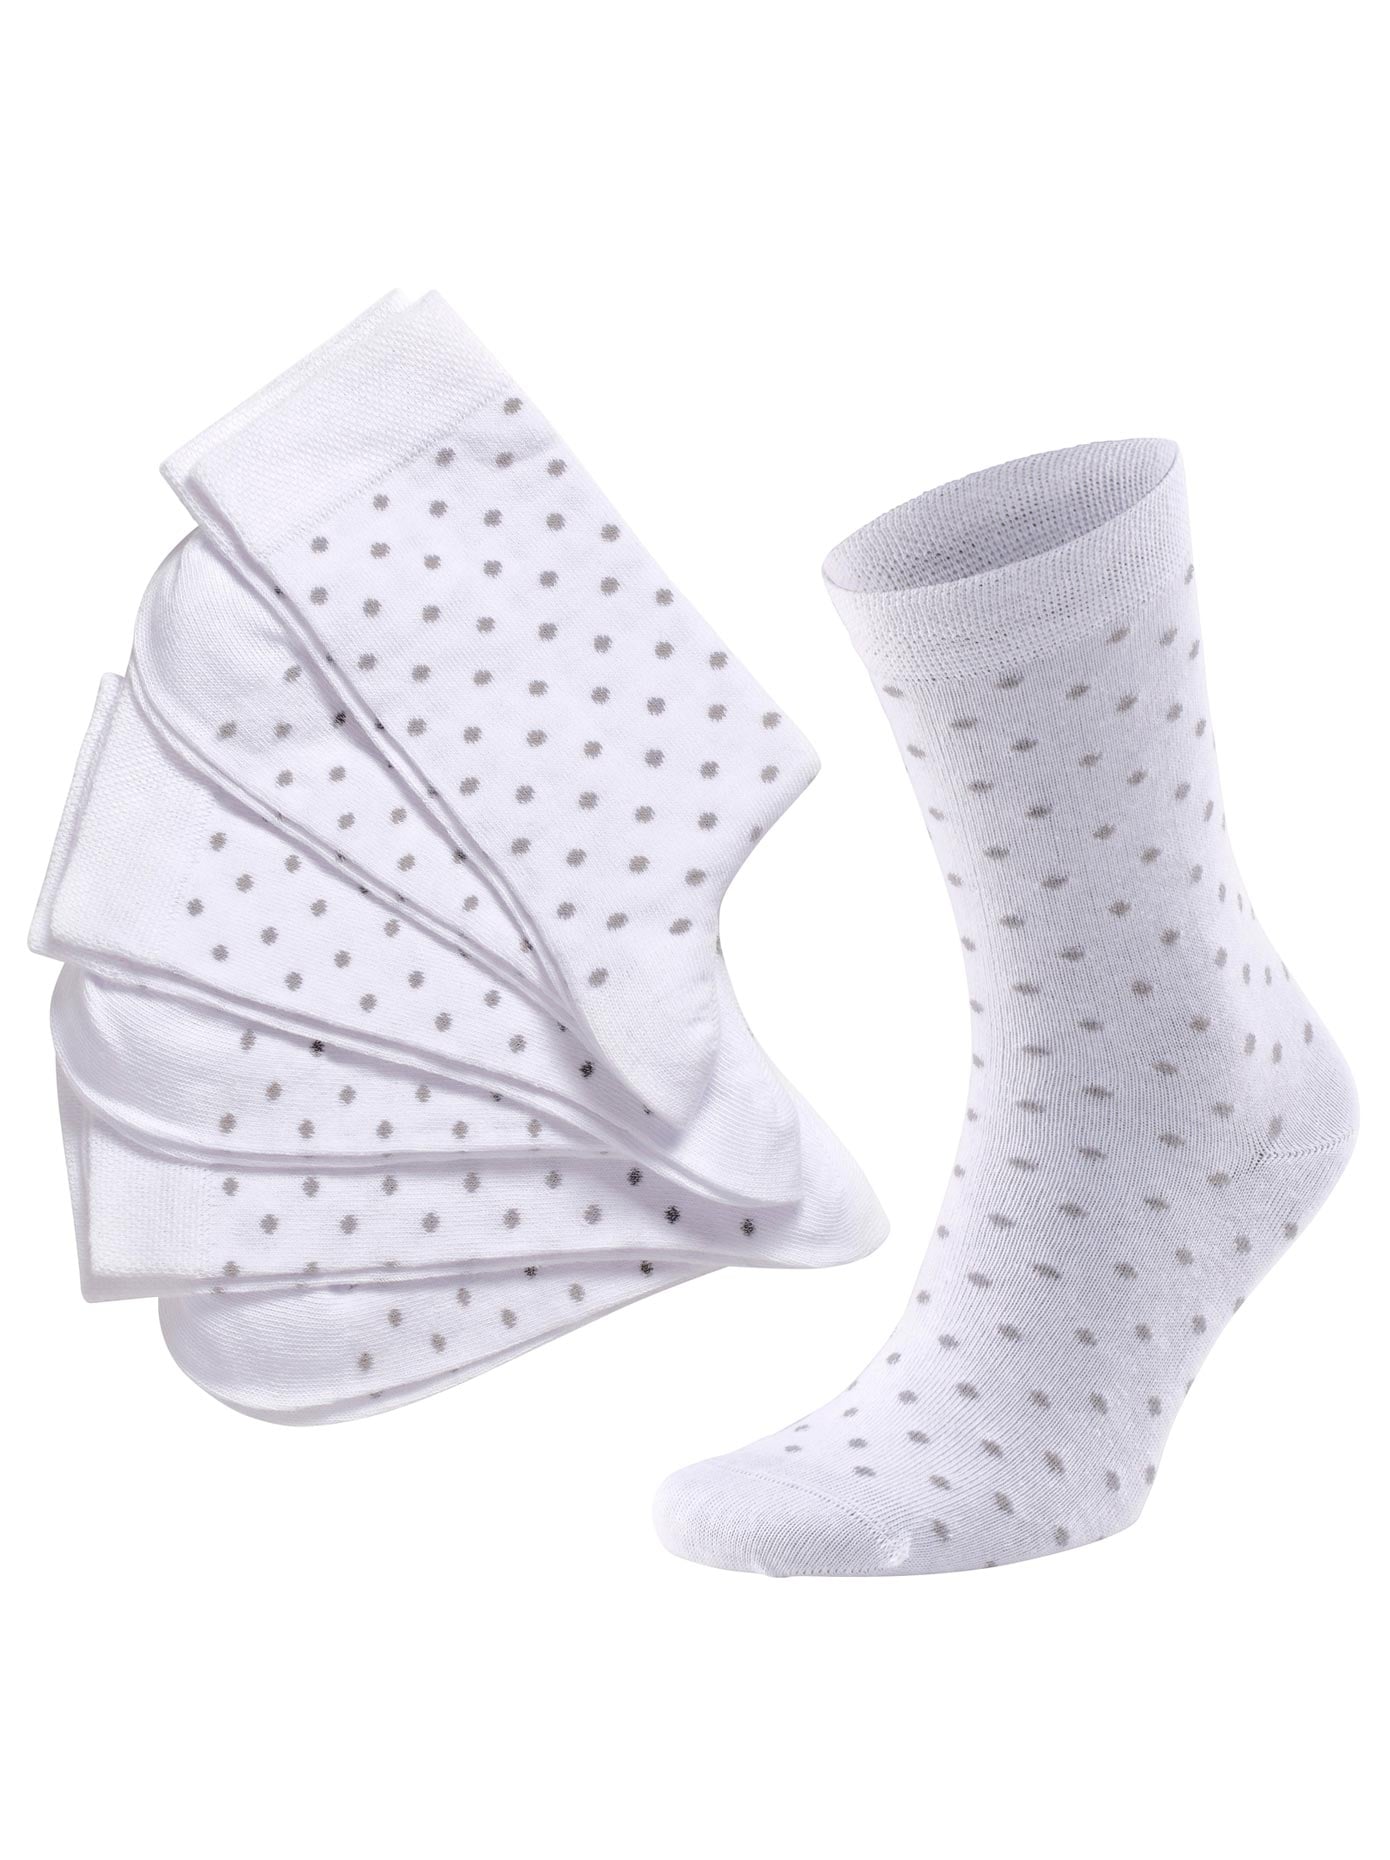 OTTO Socken, wäschepur bei (3 Paar) bestellen